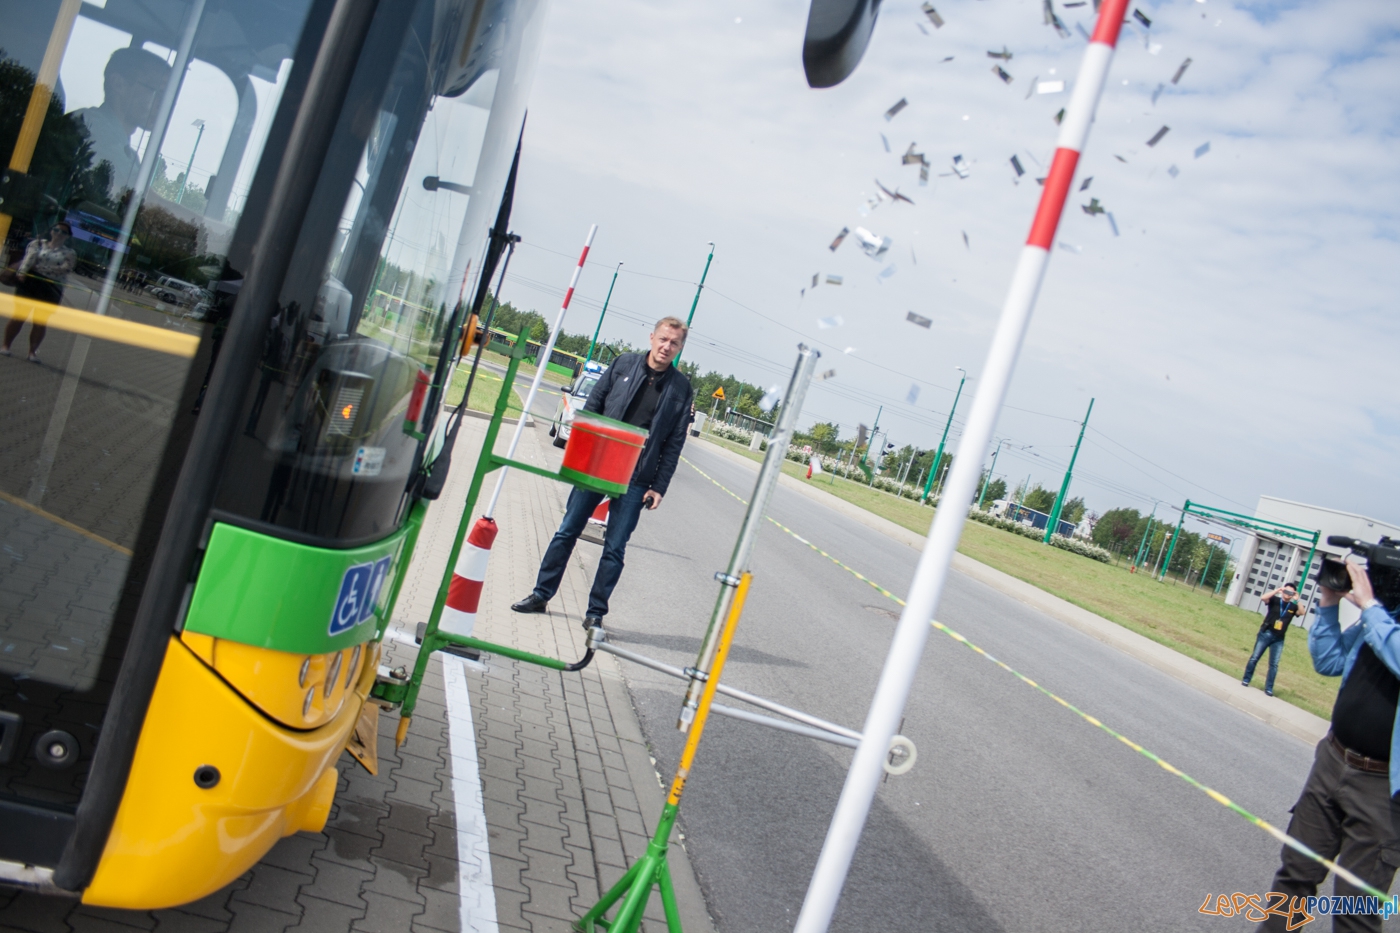 Konkurs na najlepszego kierowcę autobusu MPK (21.05.2016)  Foto: © lepszyPOZNAN.pl / Karolina Kiraga